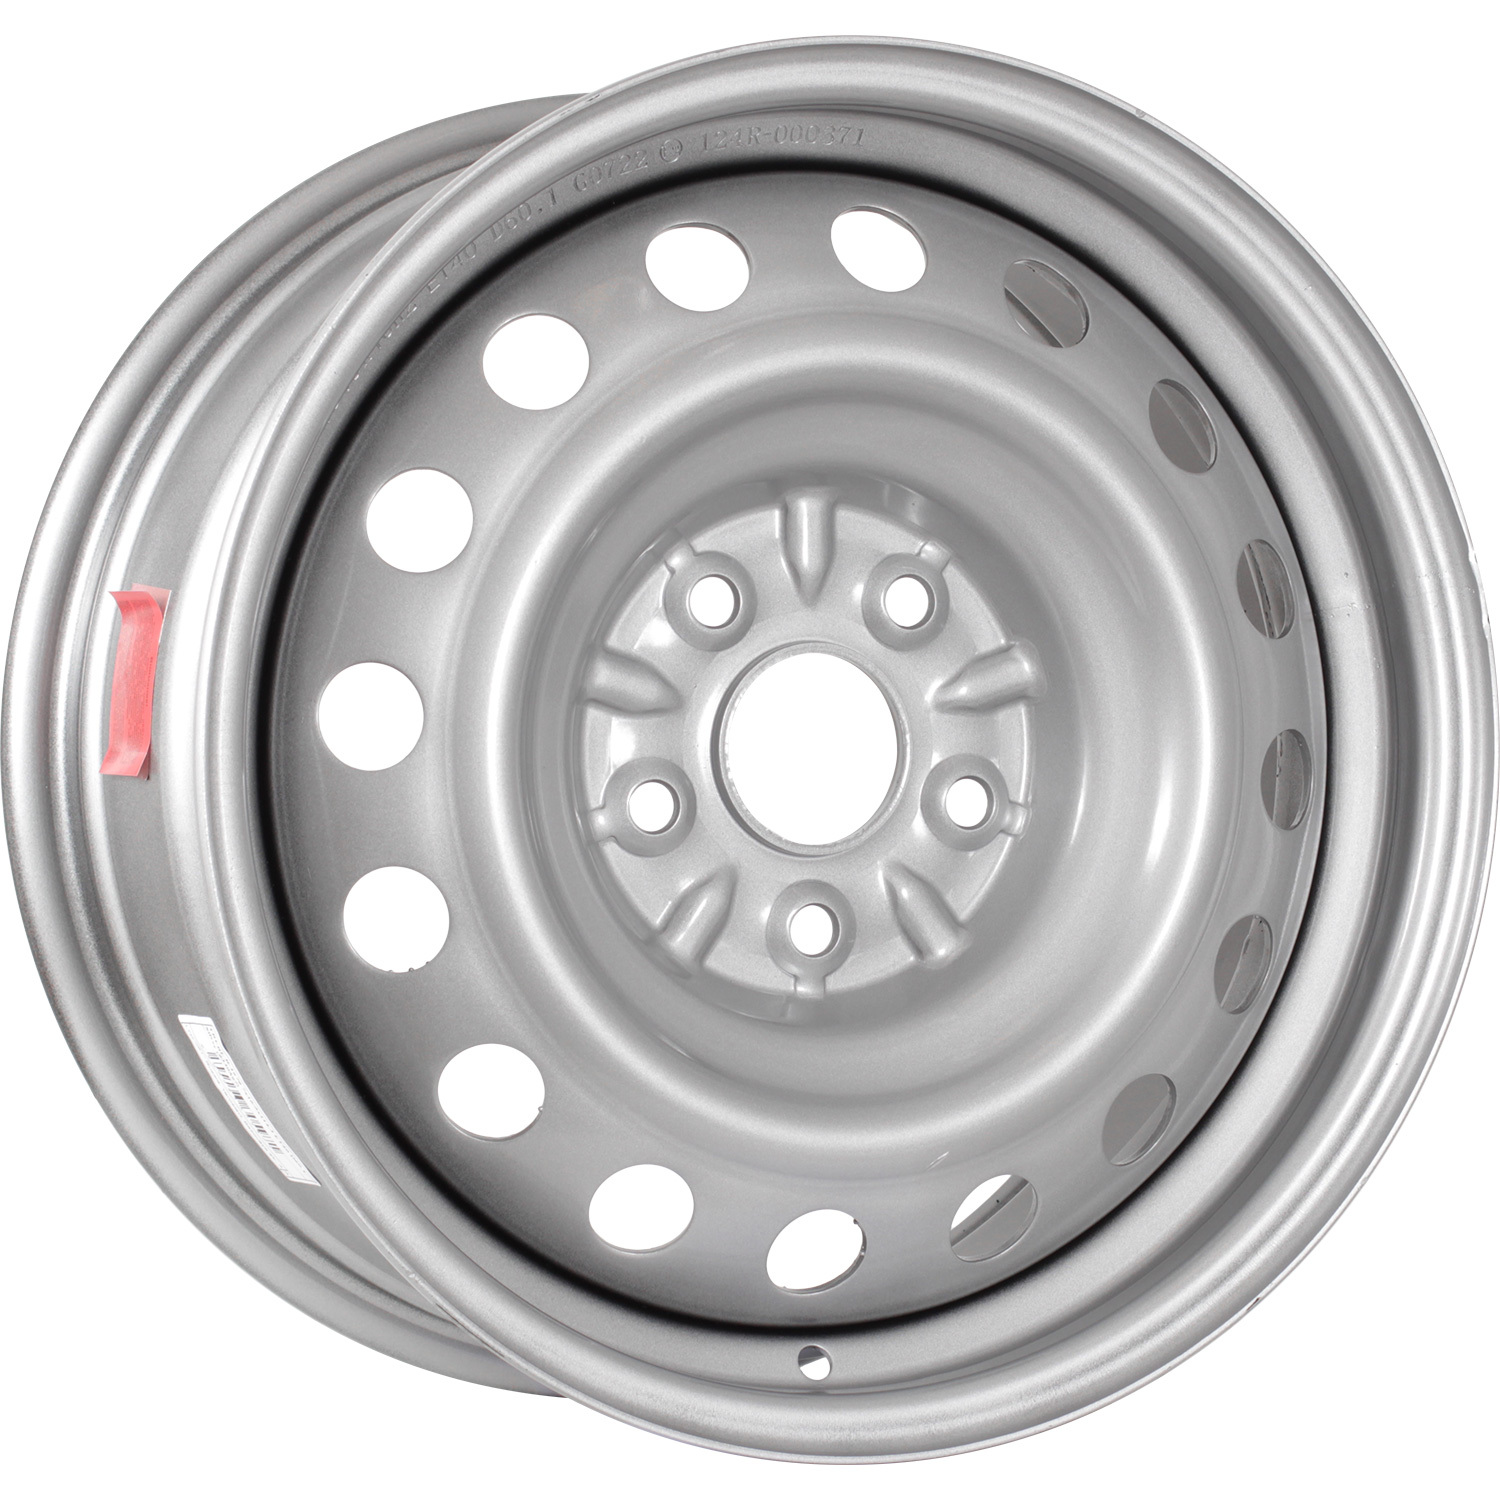 Колесный диск Trebl R-1679 Trebl 7x16/5x114.3 D60.1 ET40 Silver колесный диск trebl r 1723 trebl 6 5x17 5x114 3 d64 1 et40 black